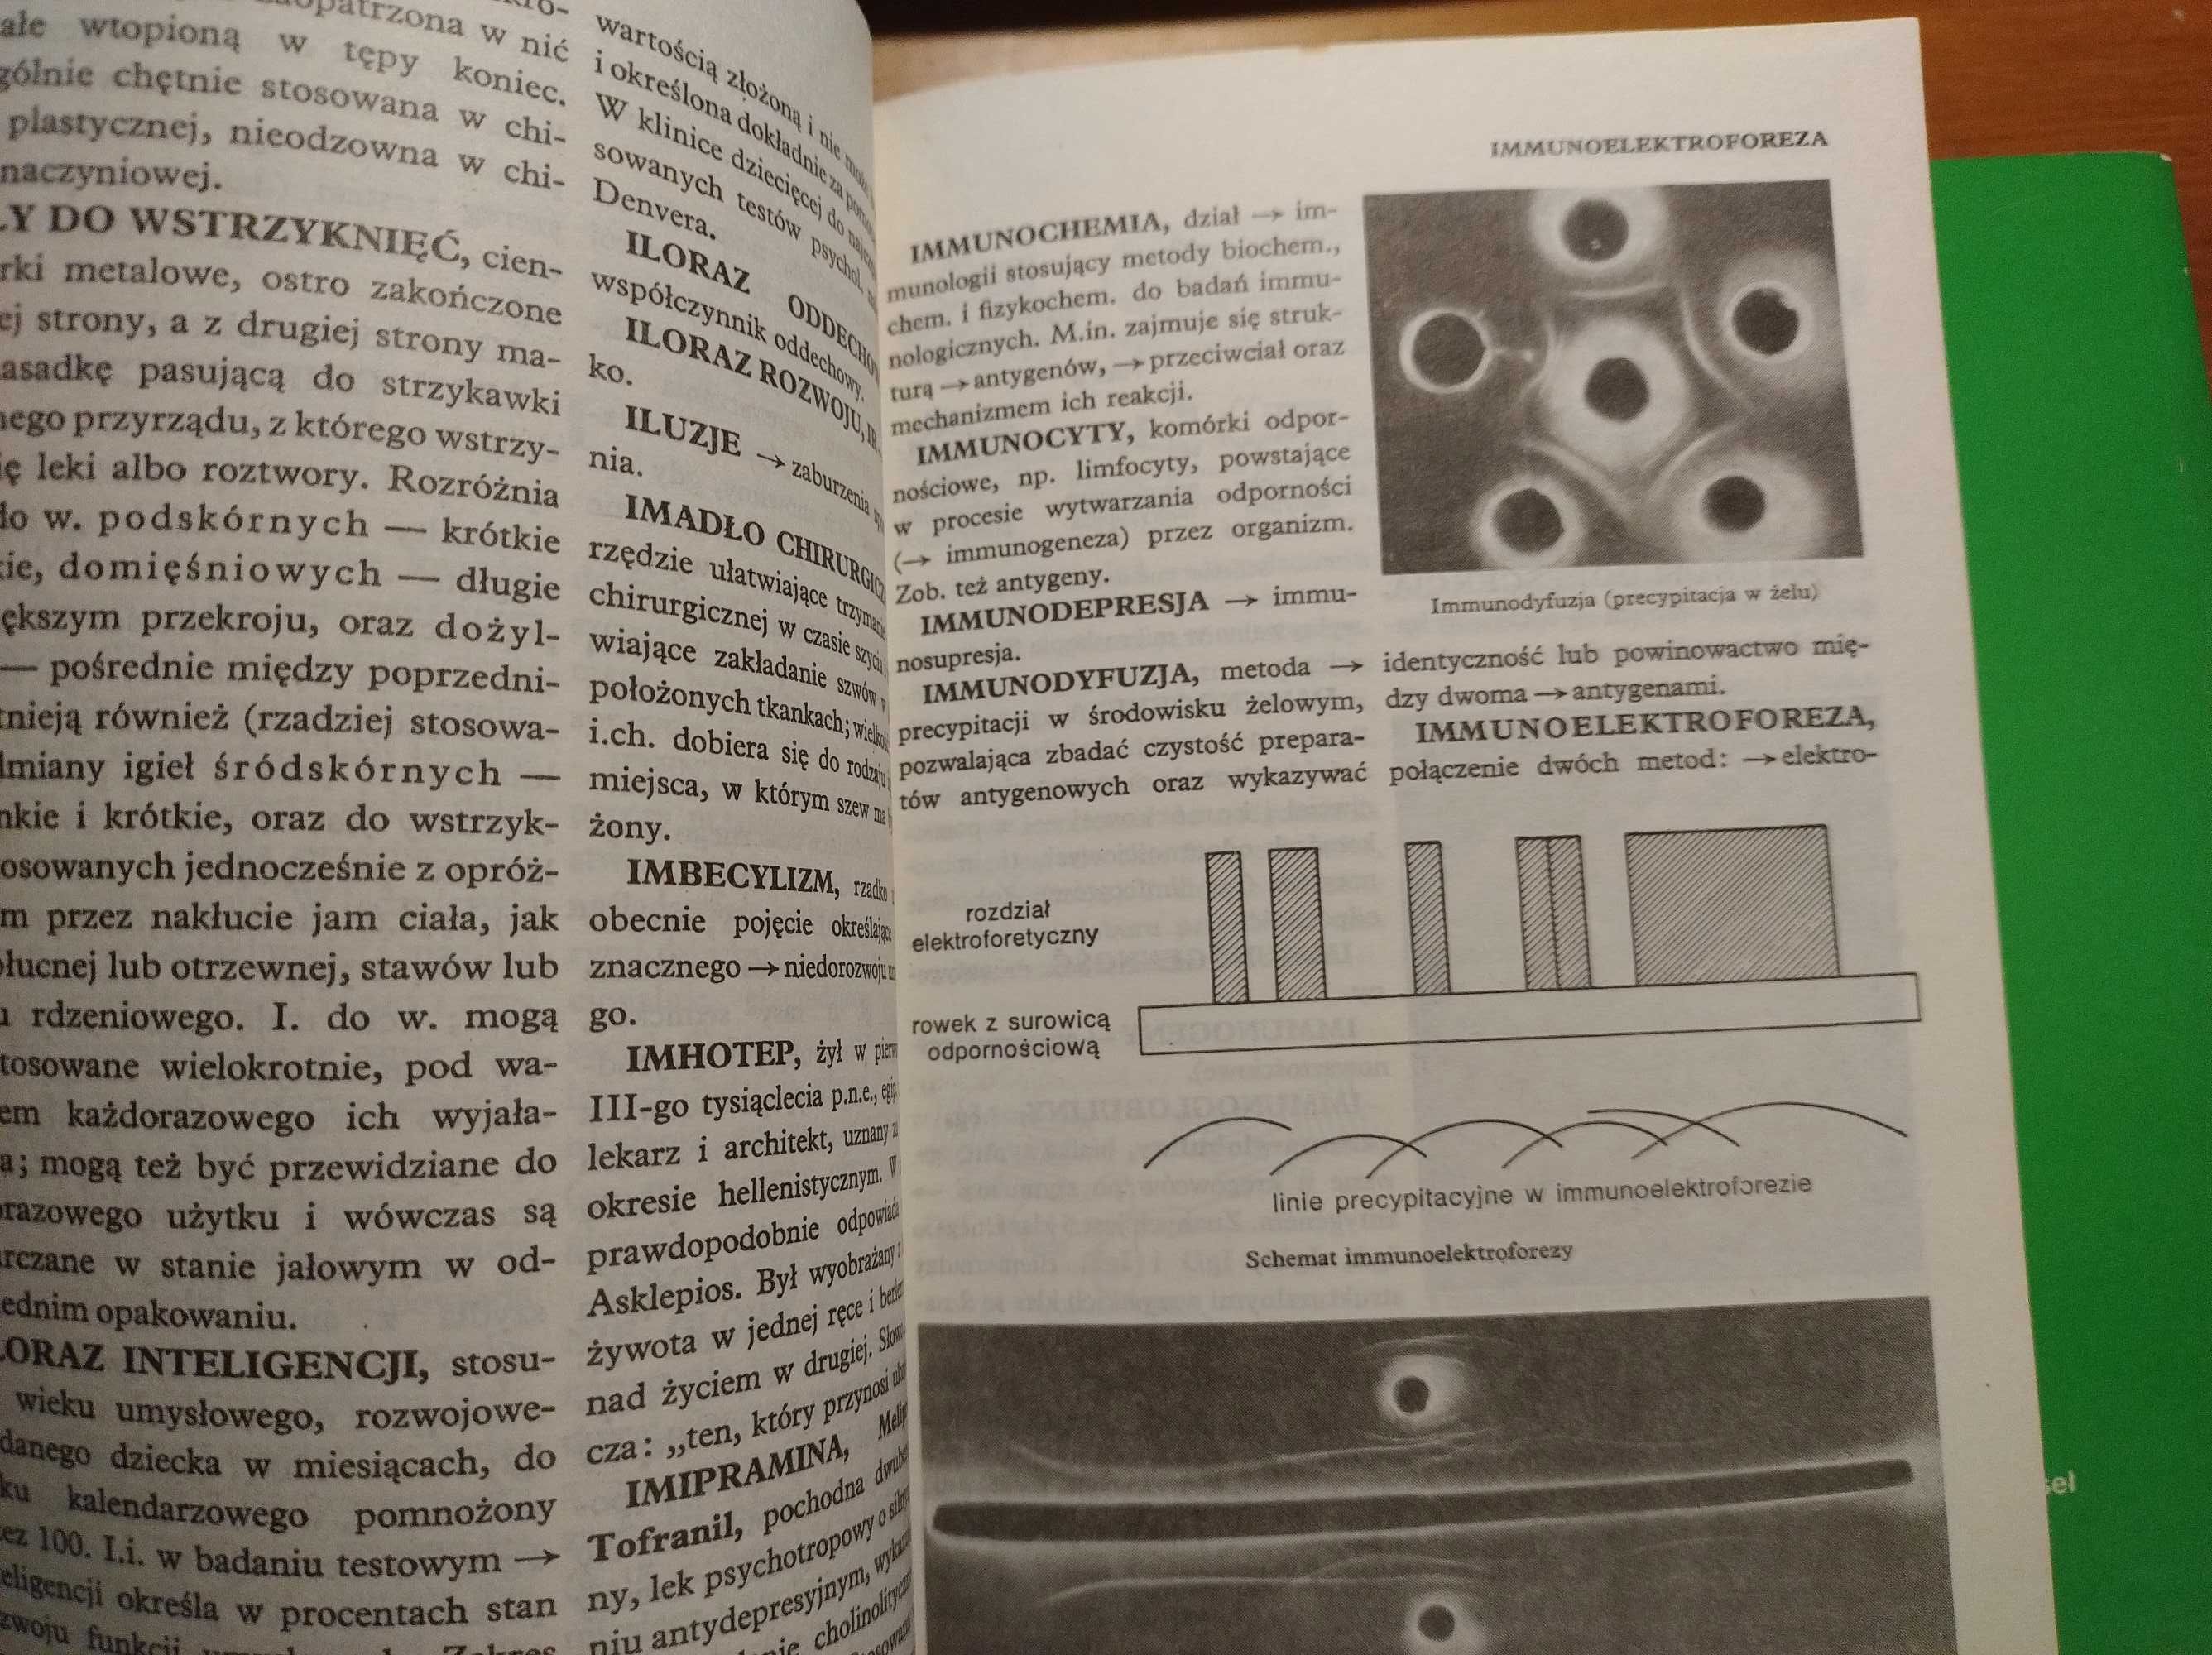 Mała encyklopedia medycyny tom 1,2,3